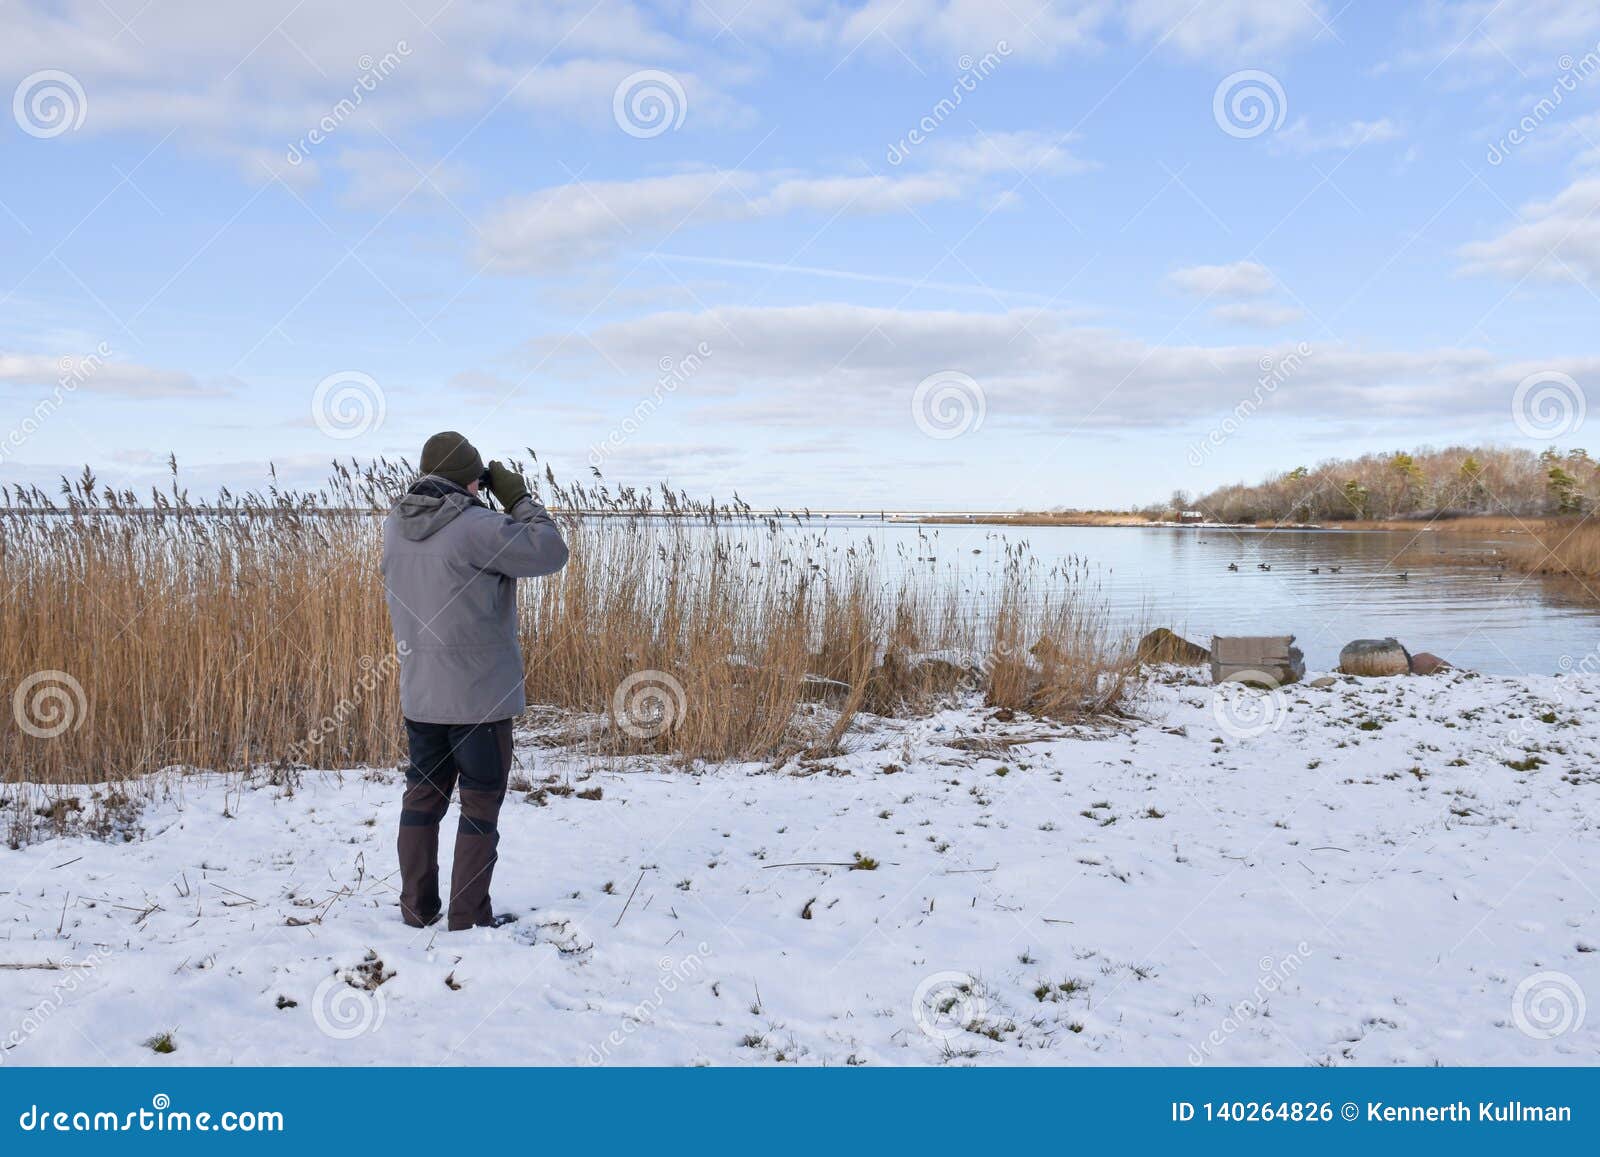 birder by a bay in winter season